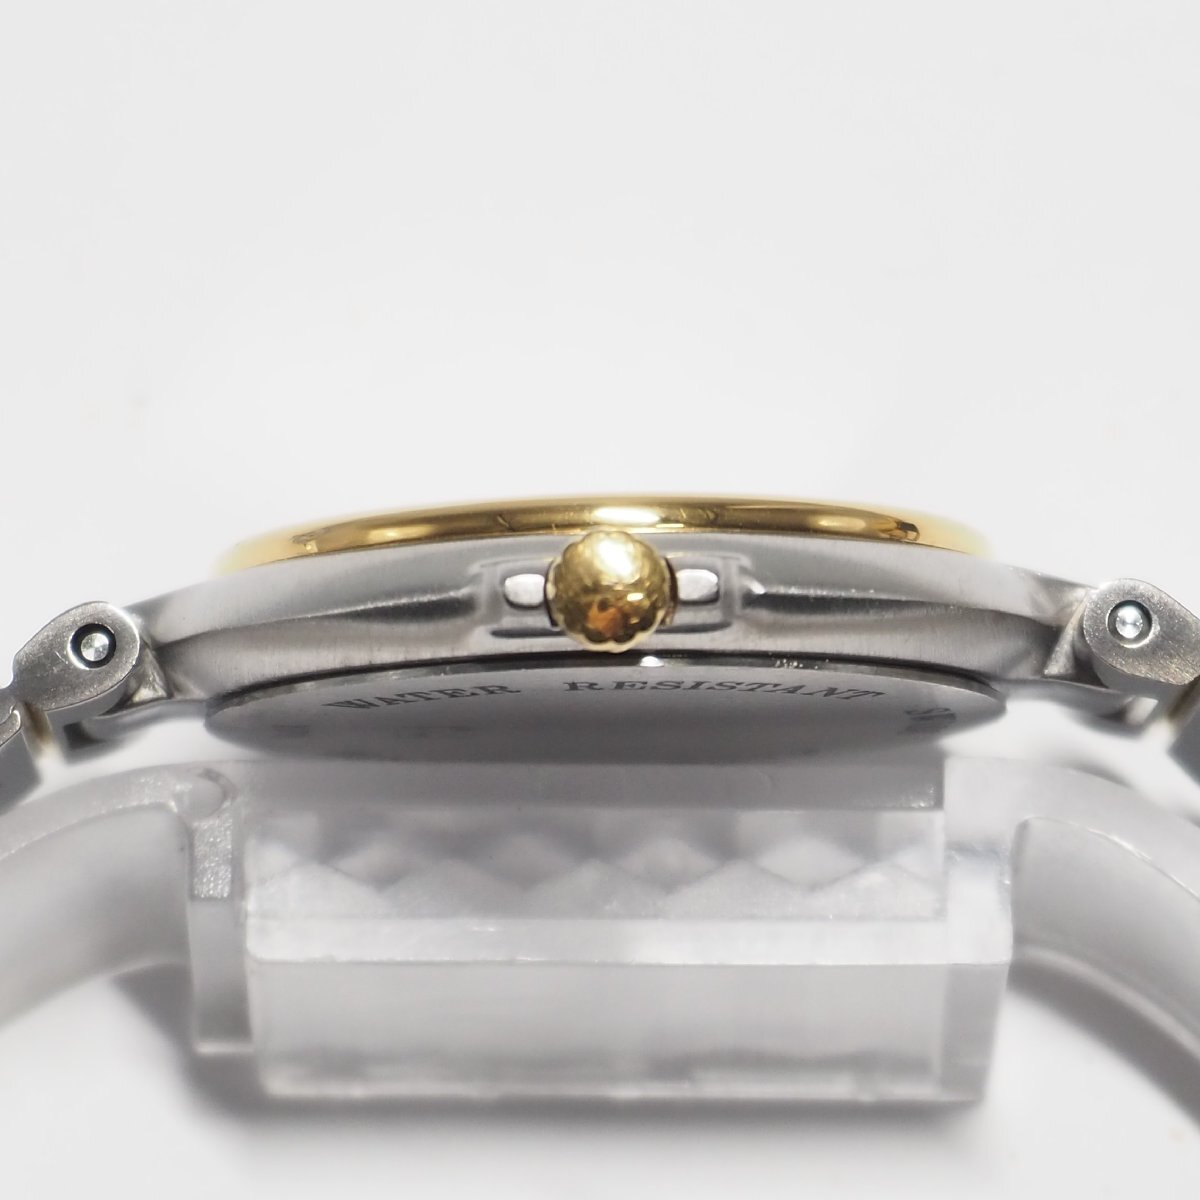  Dunhill Dunhill 12P diamond мужской кварц наручные часы Gold + серебряный комбинированный C371 б/у 